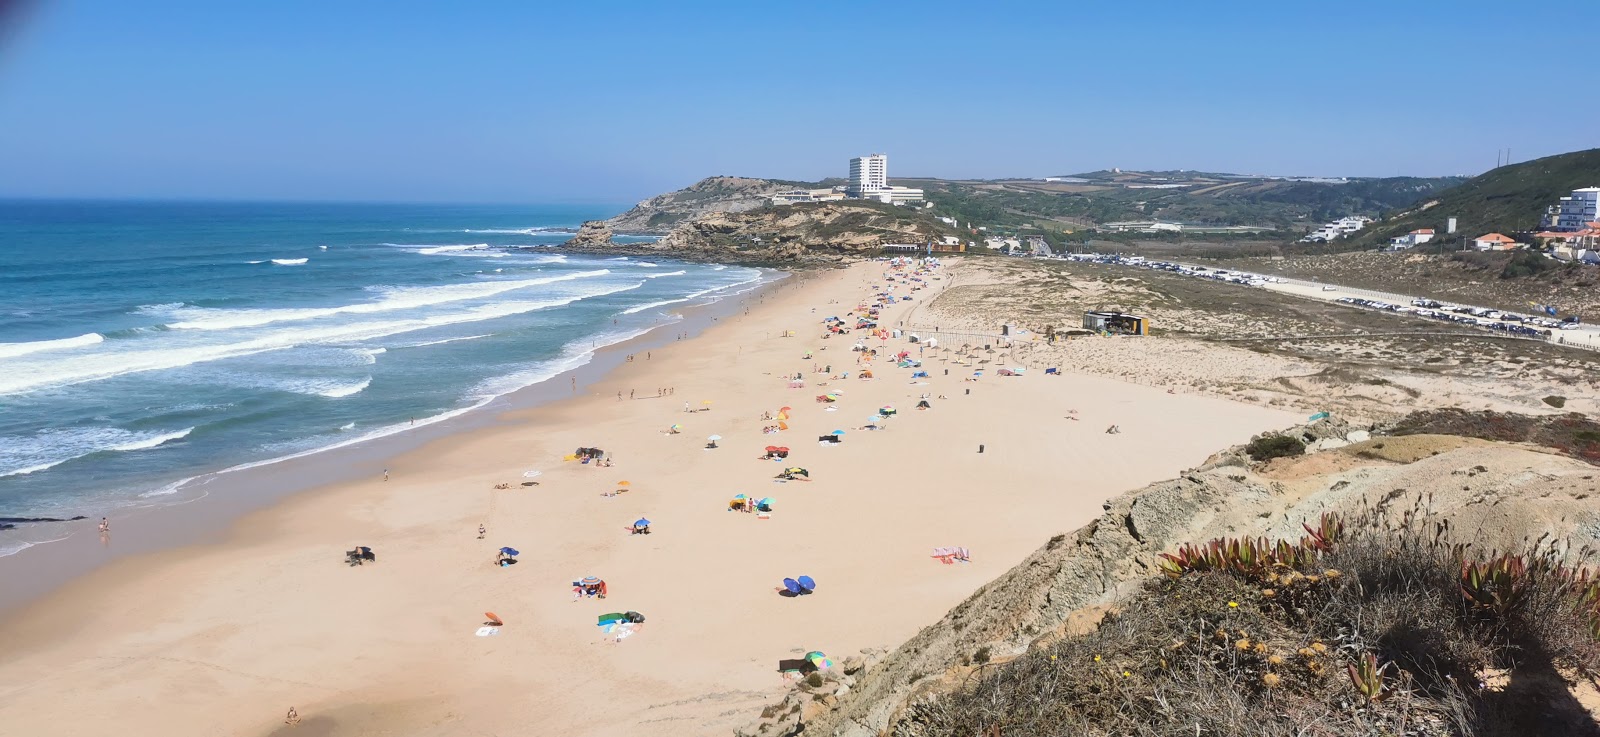 Photo of Praia de Santa Rita with long straight shore